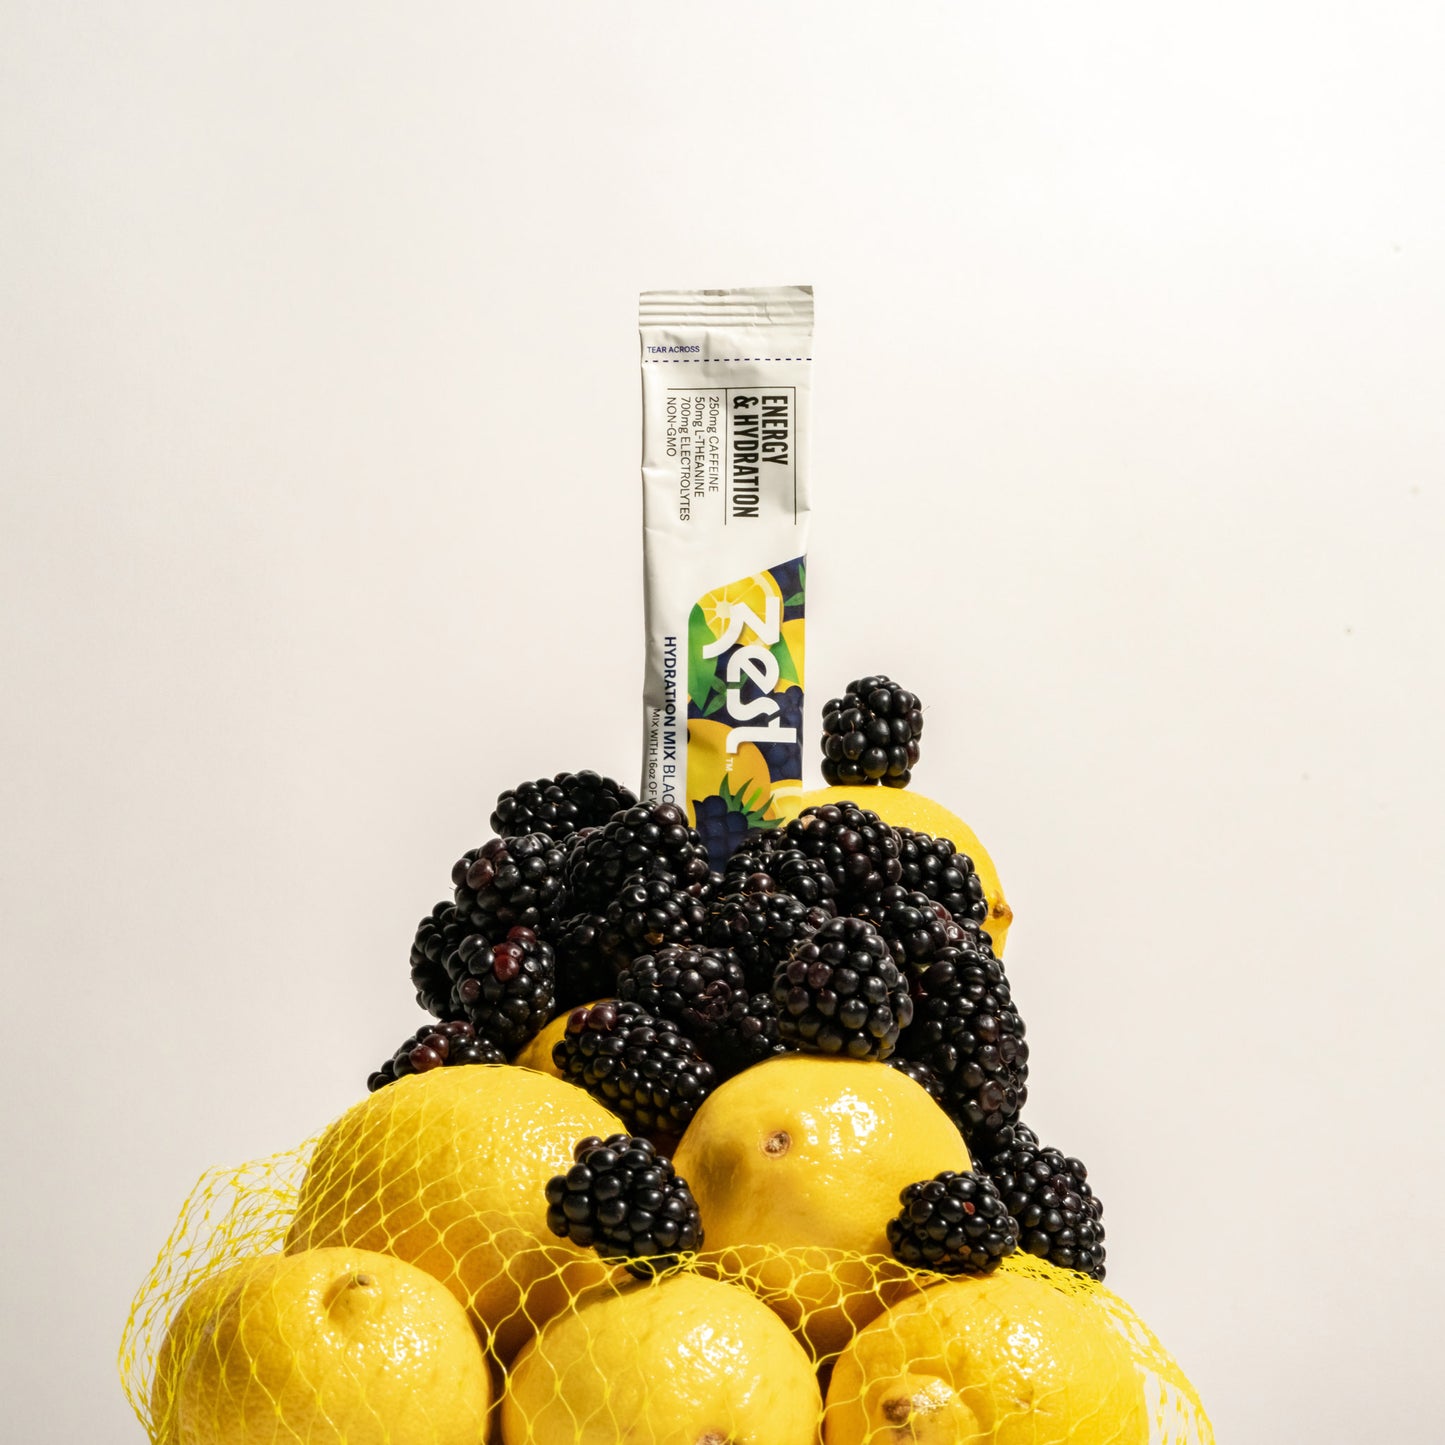 Blackberry Lemonade